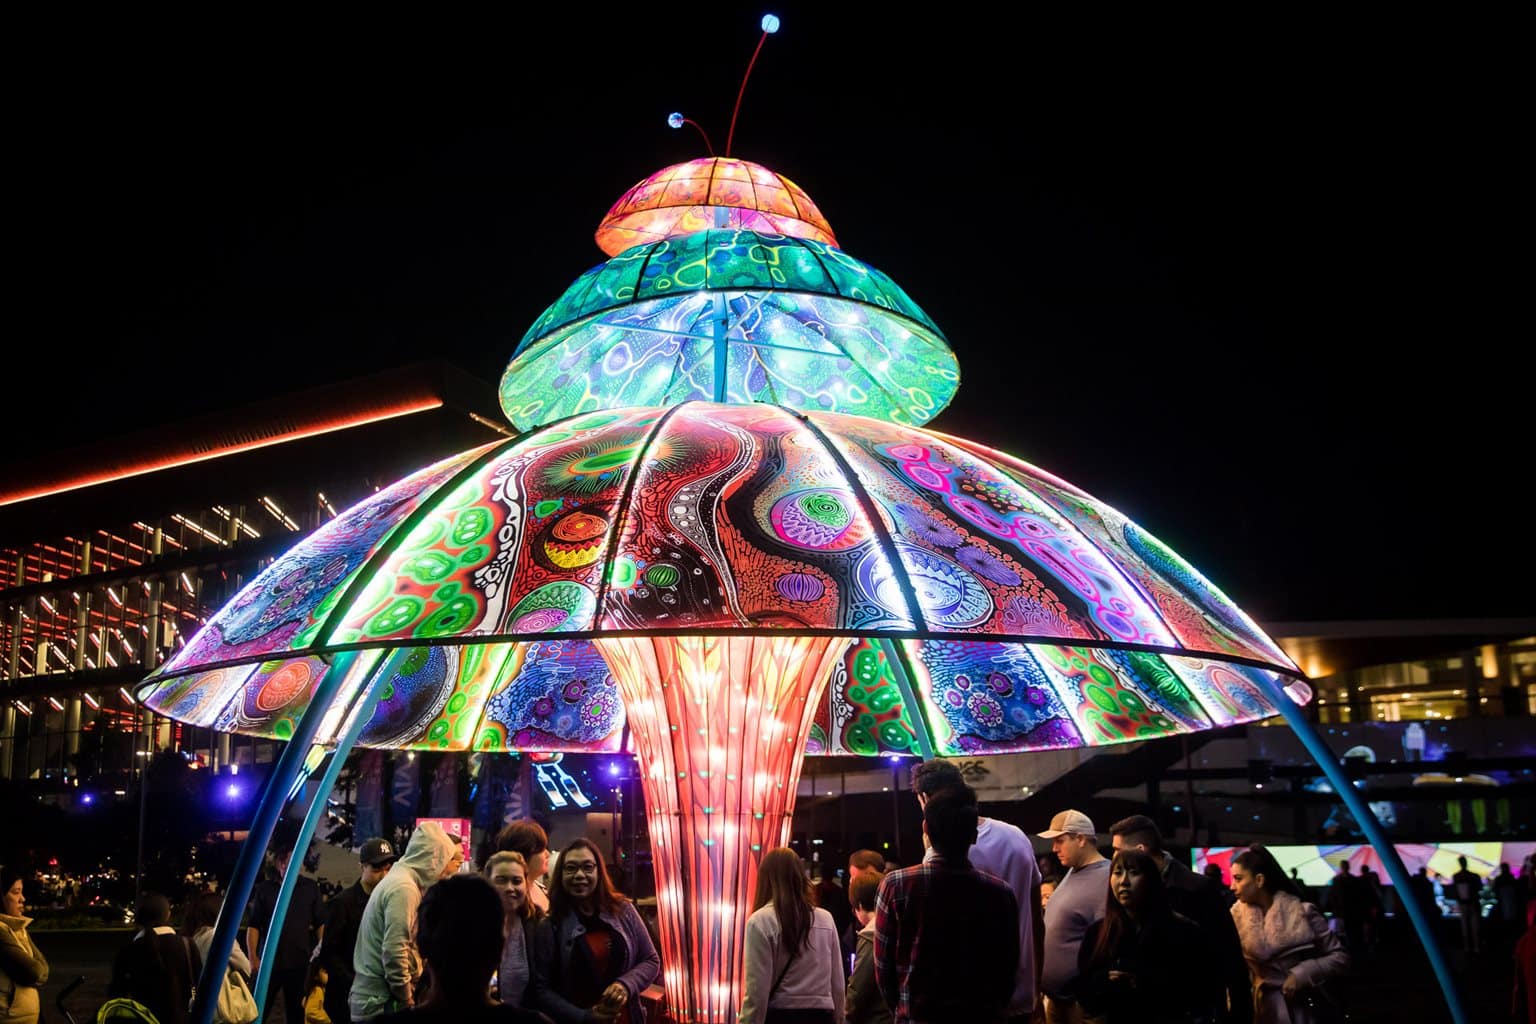 vivid sidney festival de luces mas grande del mundo daling harbord